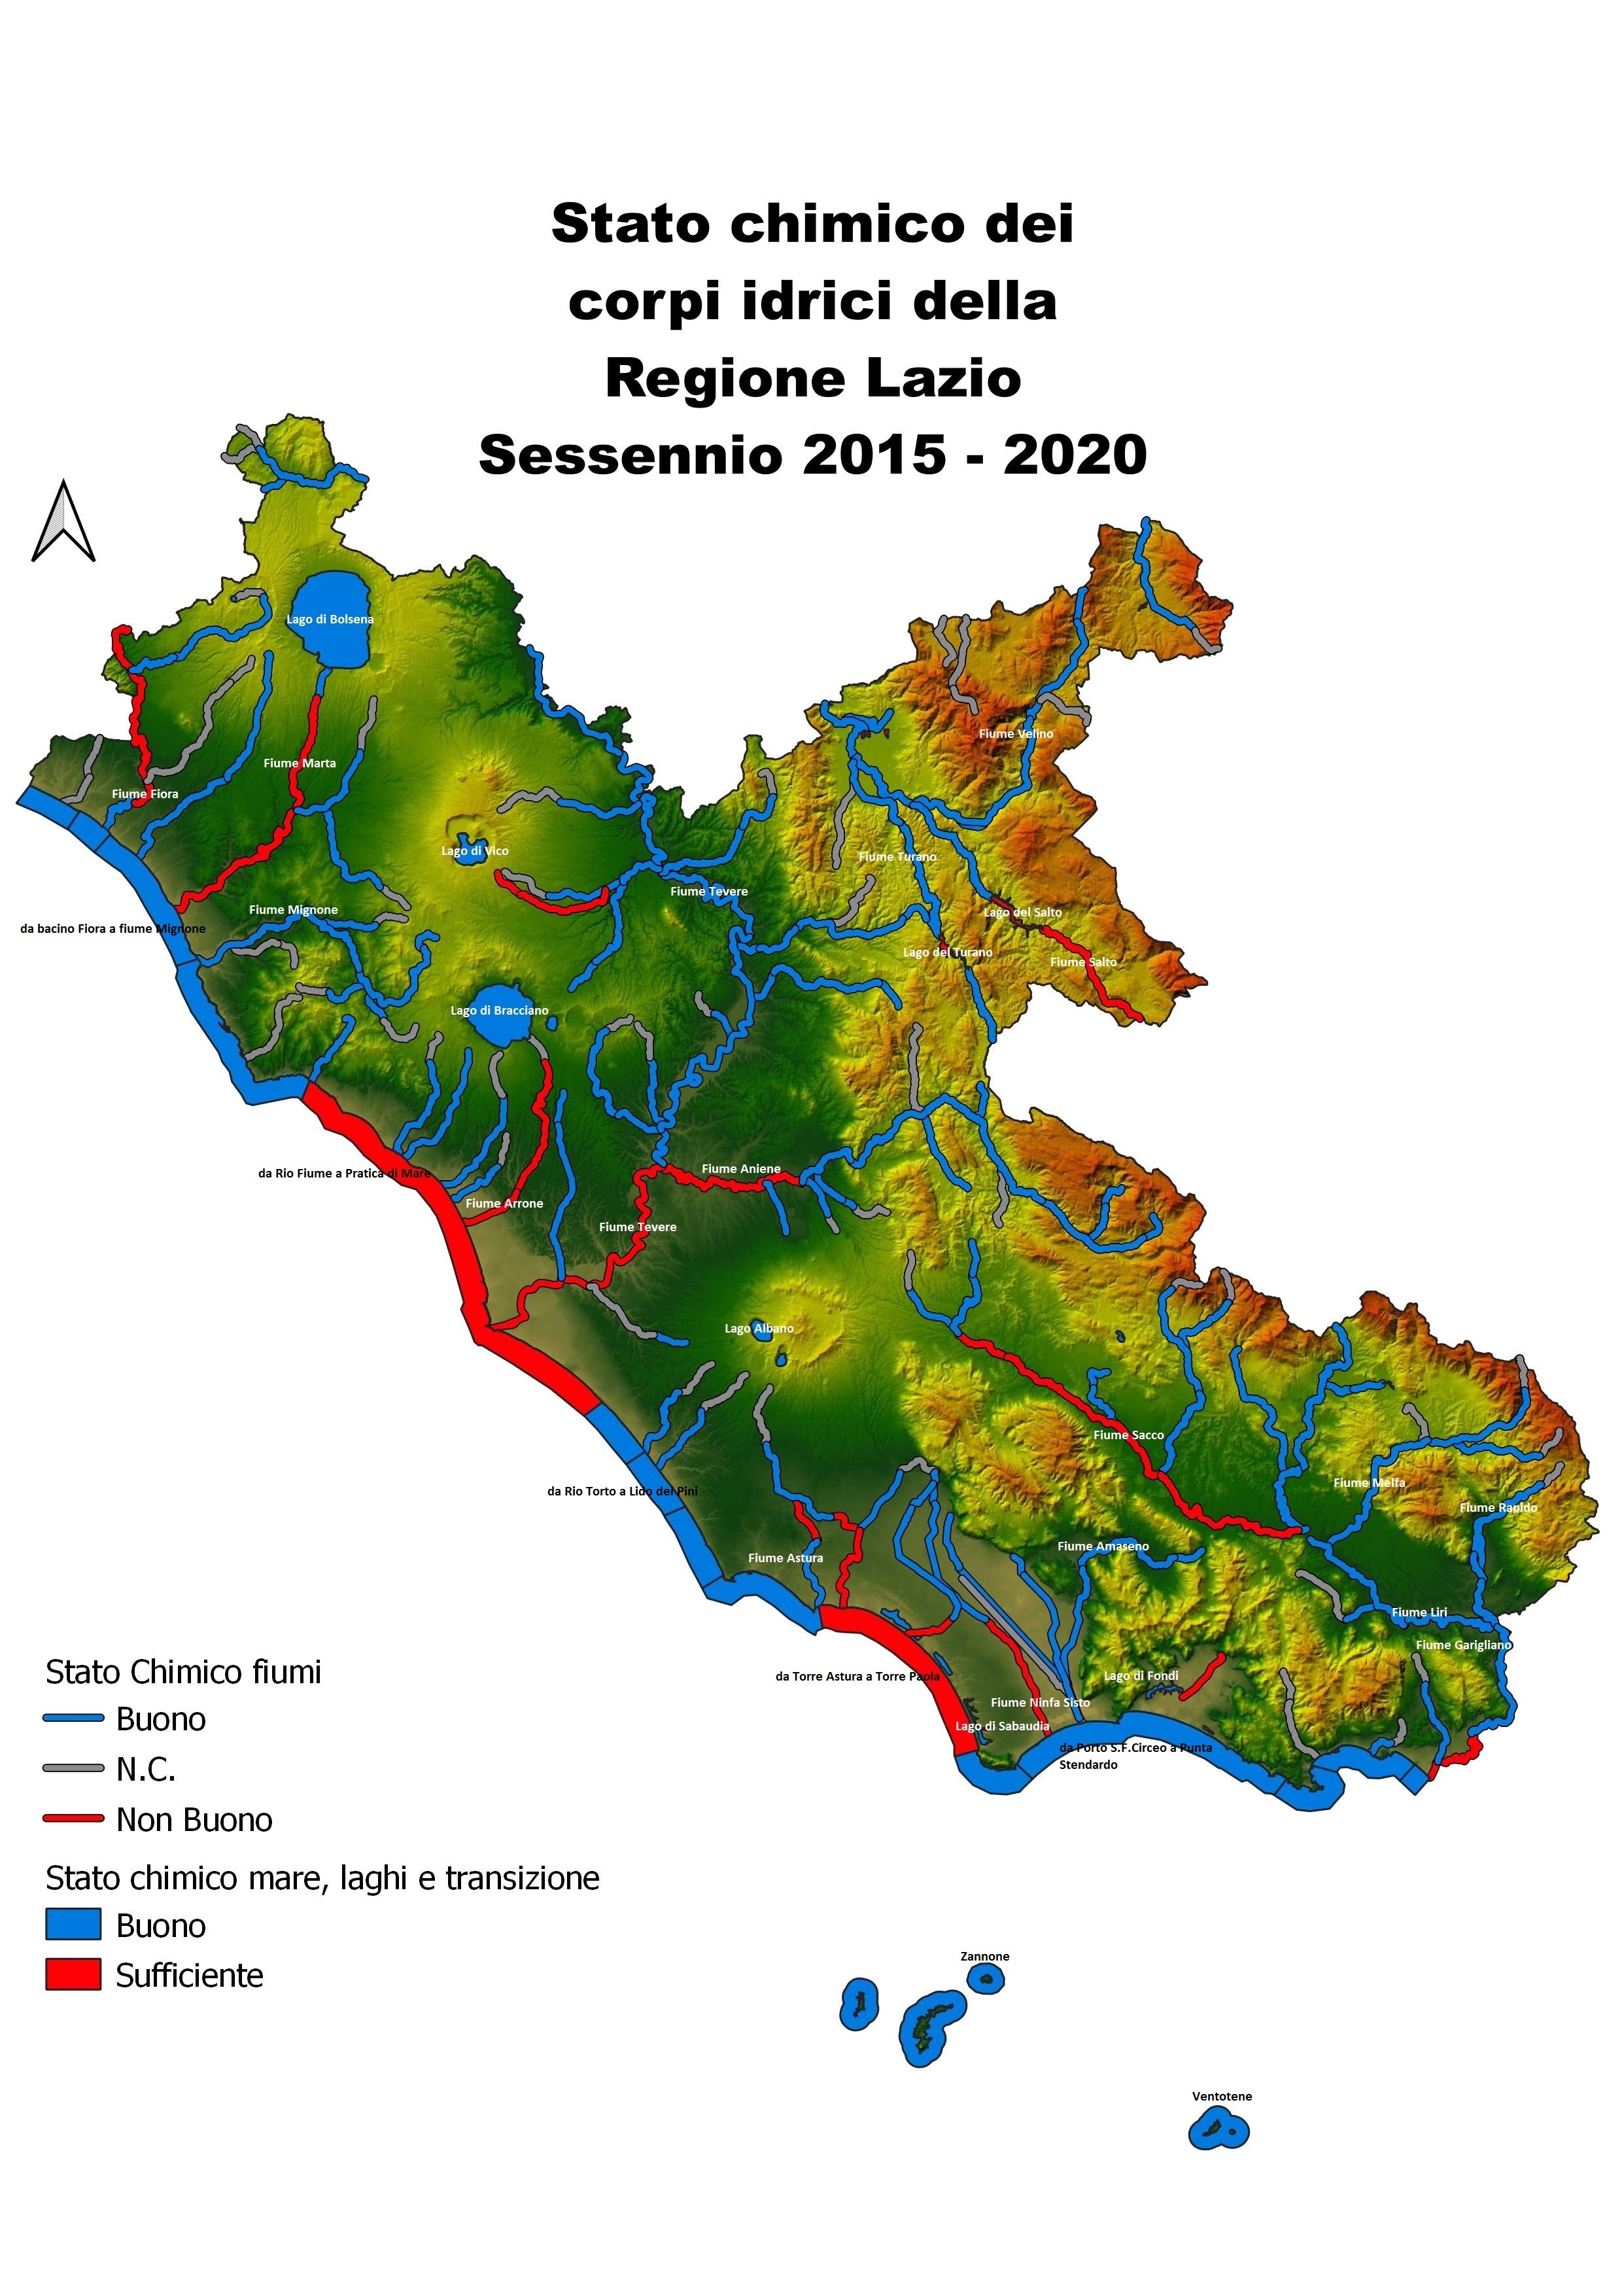 Stato chimico dei corpi idrici della Regione Lazio Sessennio 2015 - 2020